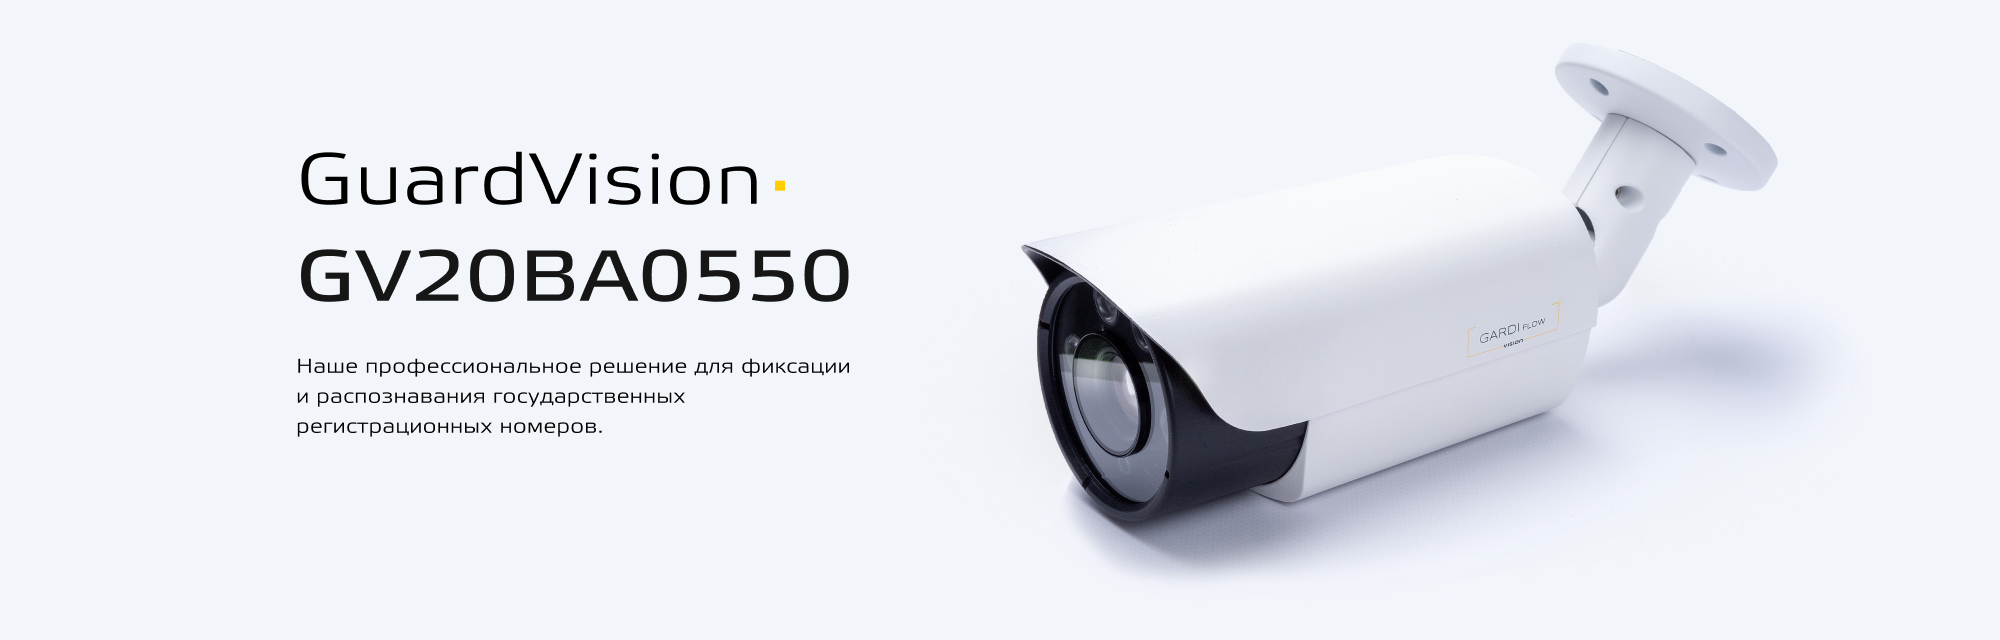 Цветная вариофокальная сетевая камера видеонаблюдения – GuardVision GV20BA0550